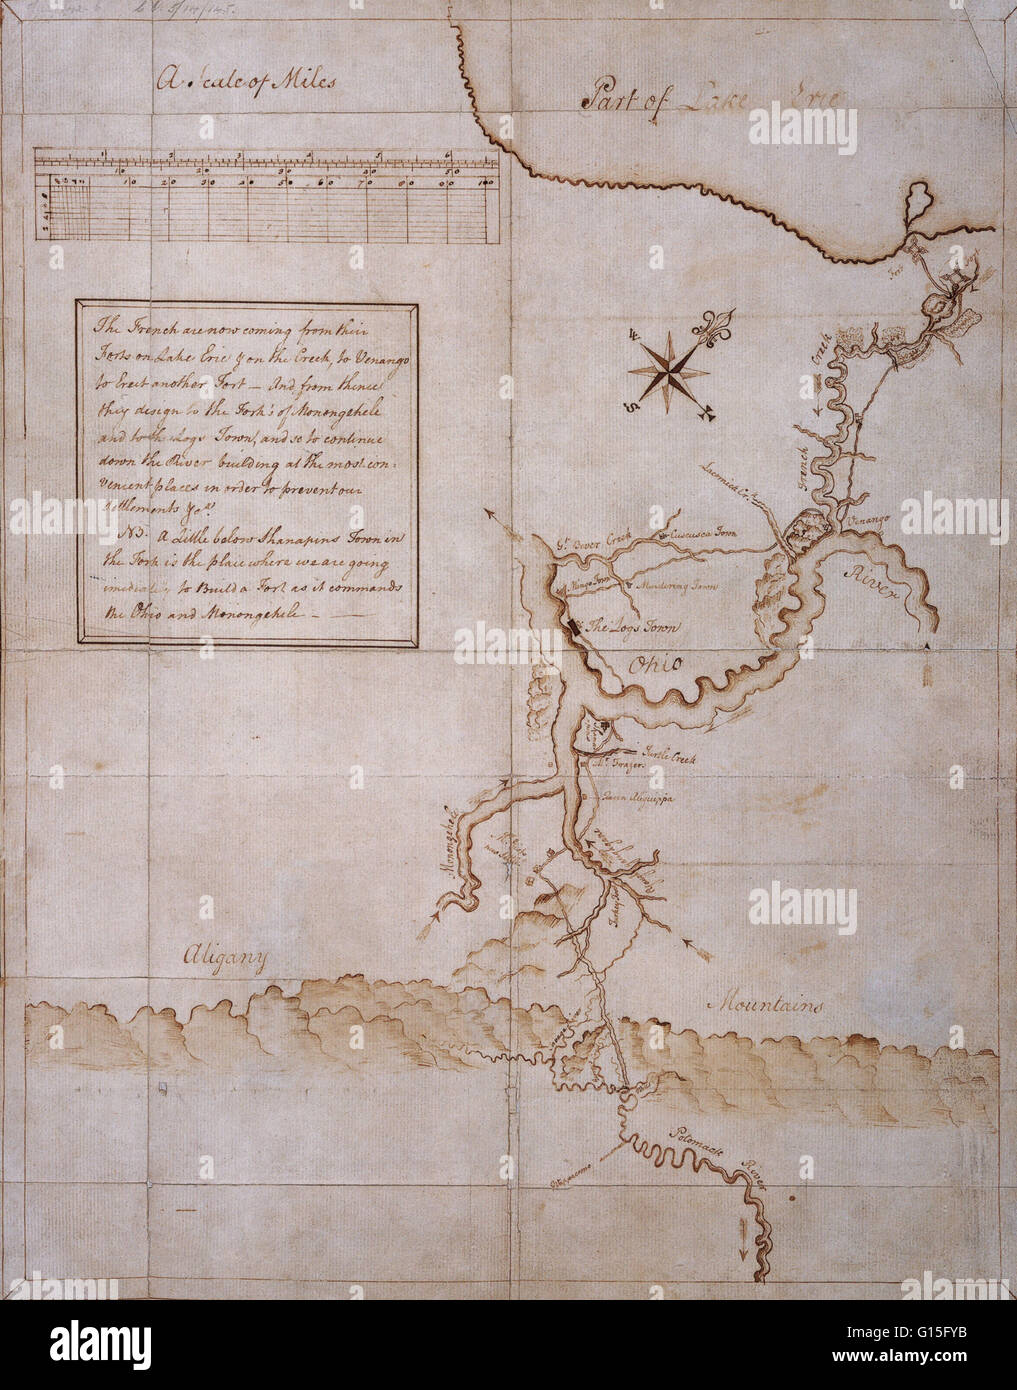 Manuskript-Karte gezeichnet von George Washington während der Kampagne von 1753 / 54. Stockfoto